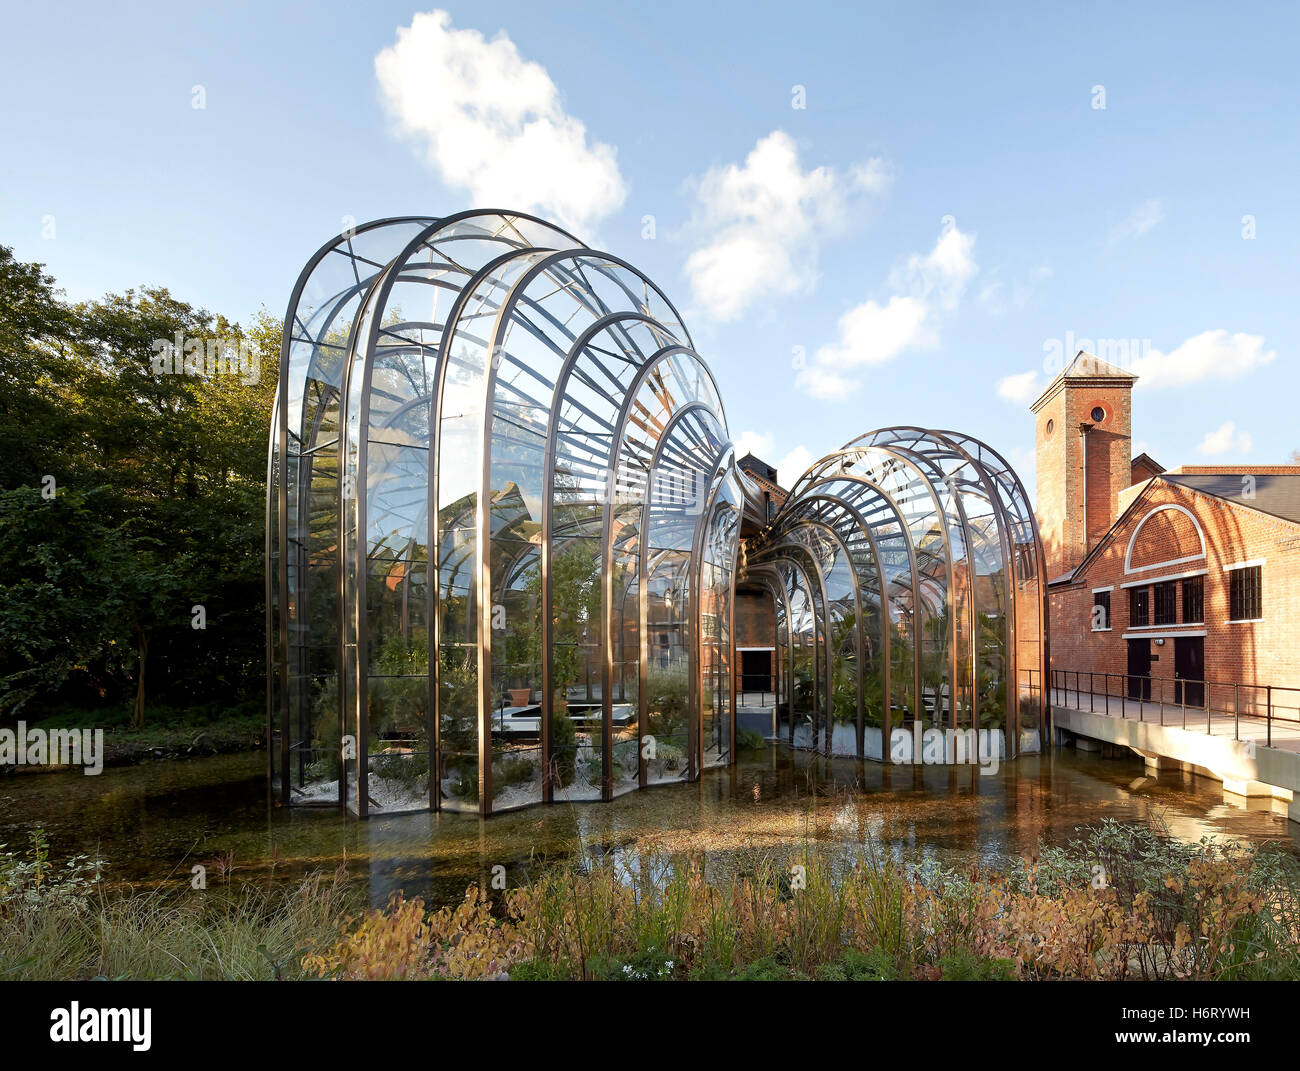 Mulino storico sito con curvatura aggiunte ad effetto serra. Bombay Sapphire distilleria, lyndhurst, Regno Unito. Architetto: Heatherwick, 2014. Foto Stock